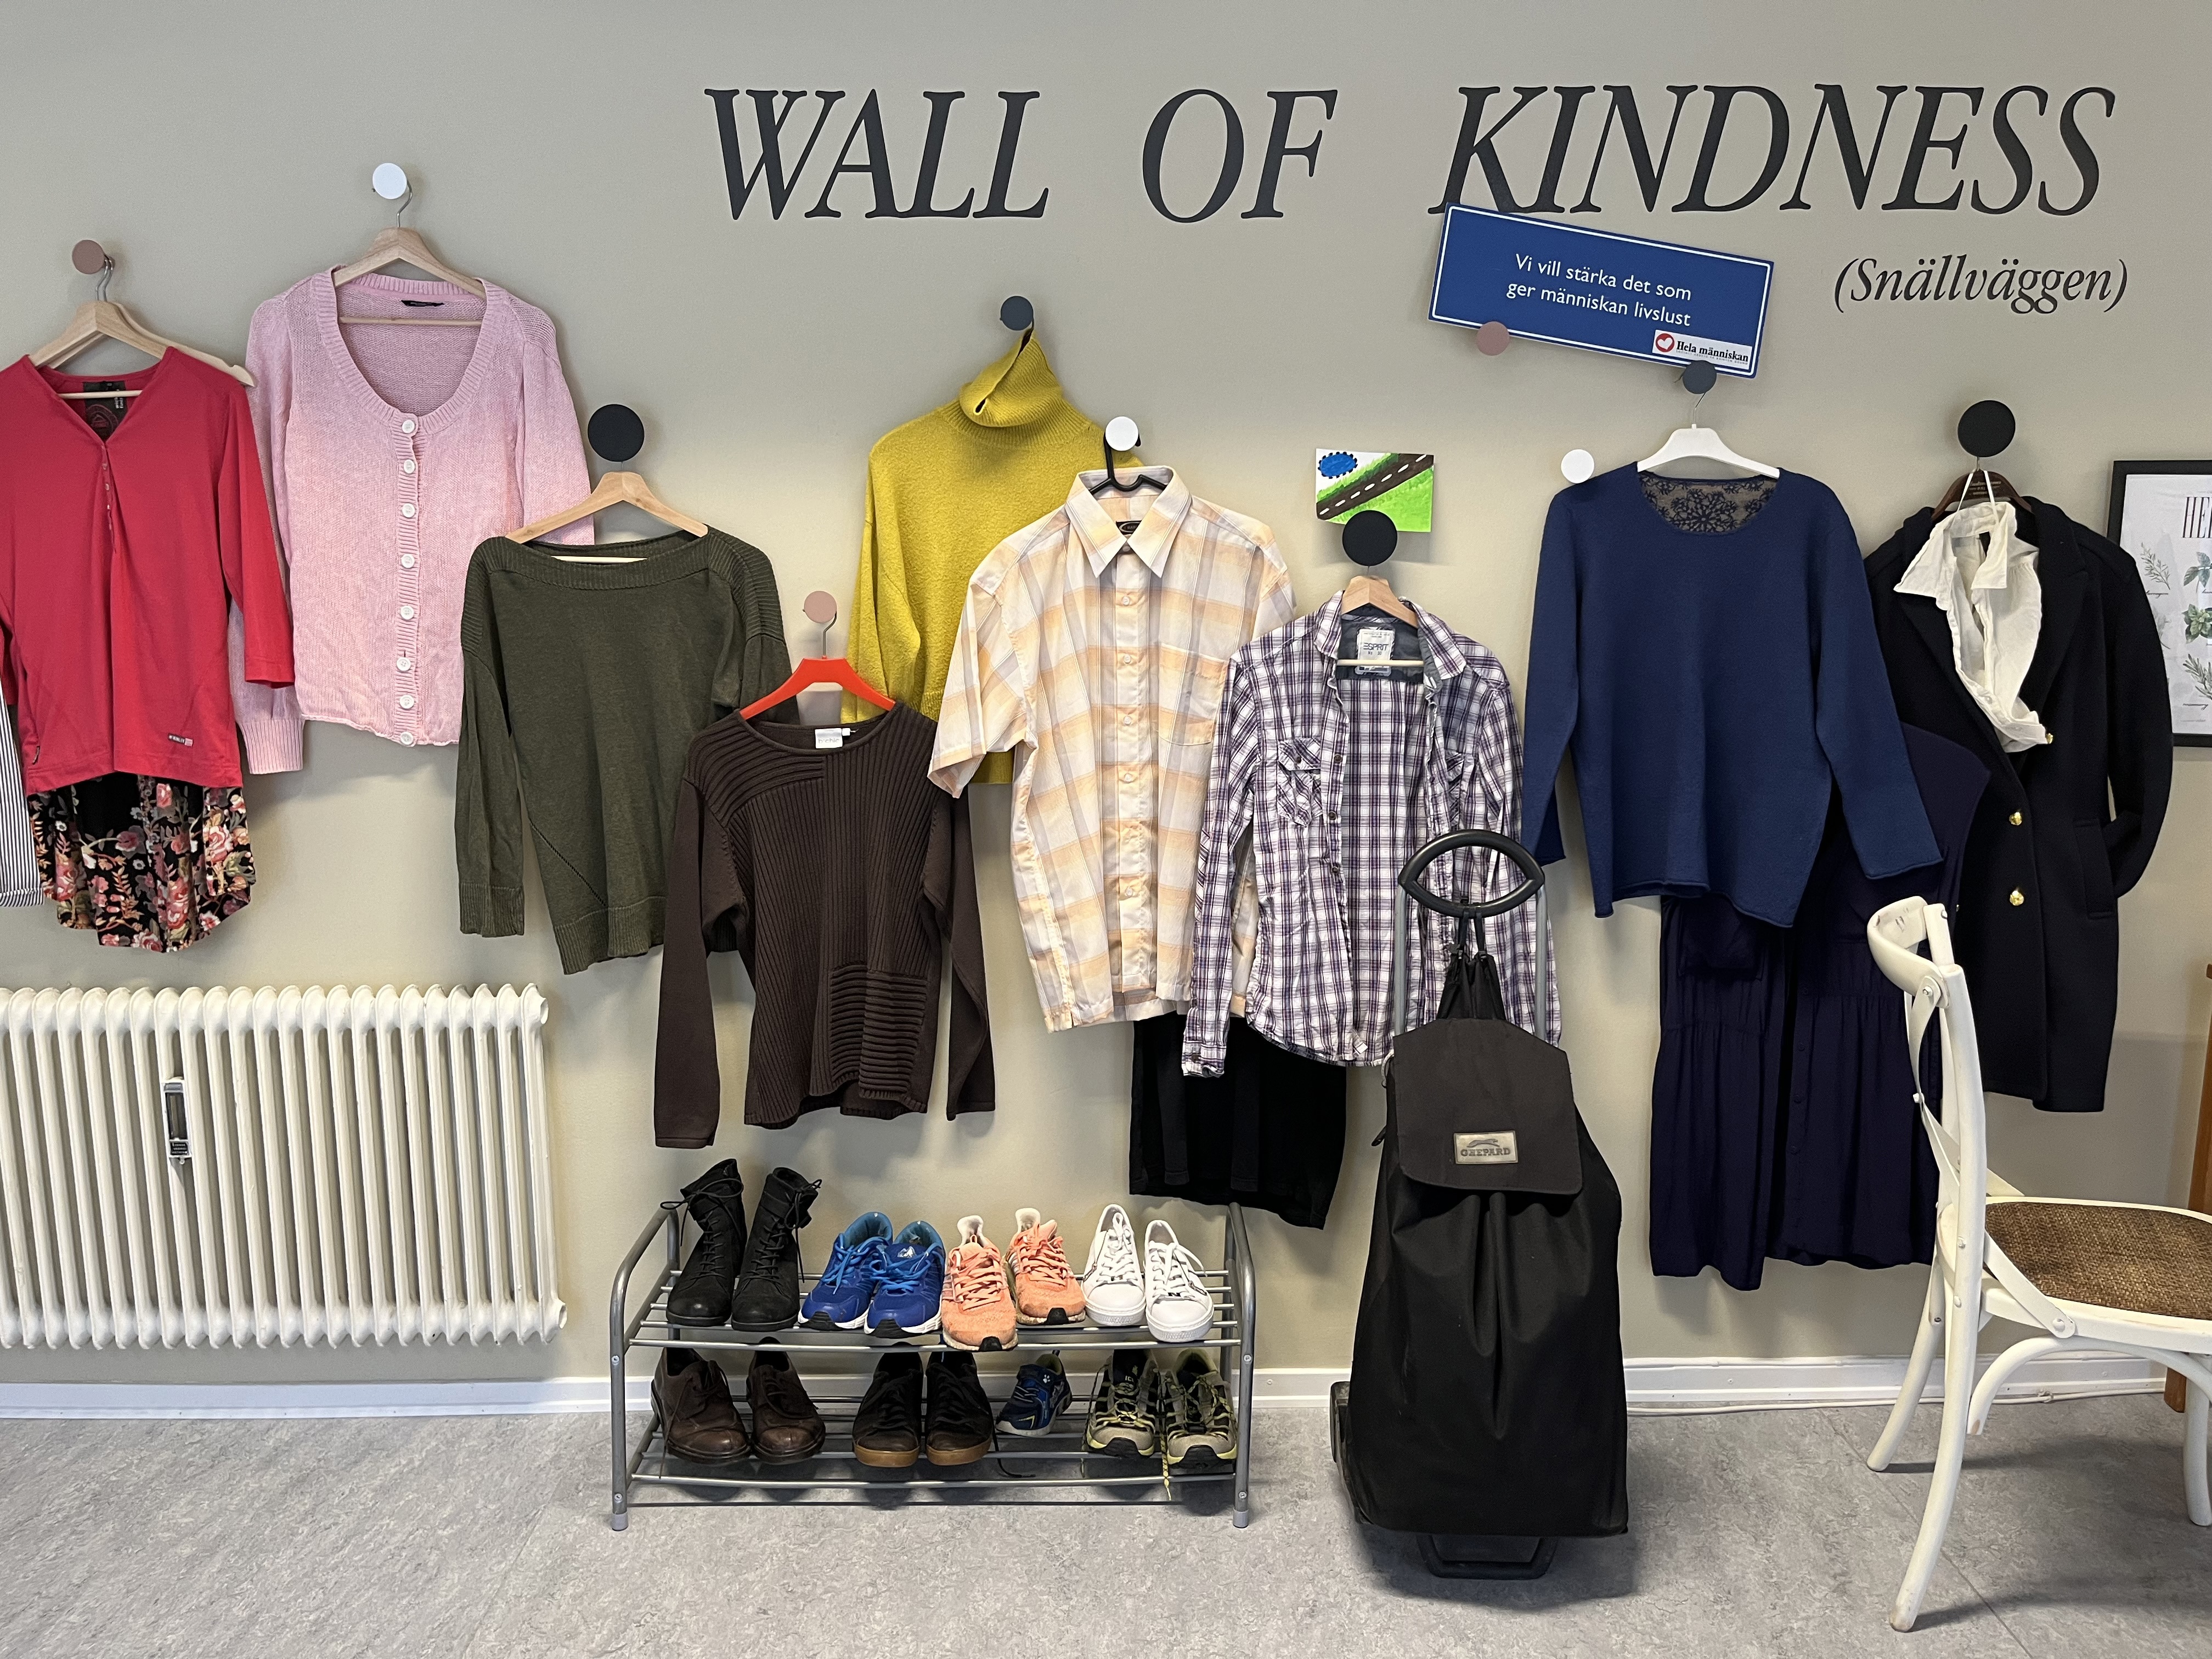 En vägg där det hänger kläder på galgar och står en text med orden Wall of Kindness.